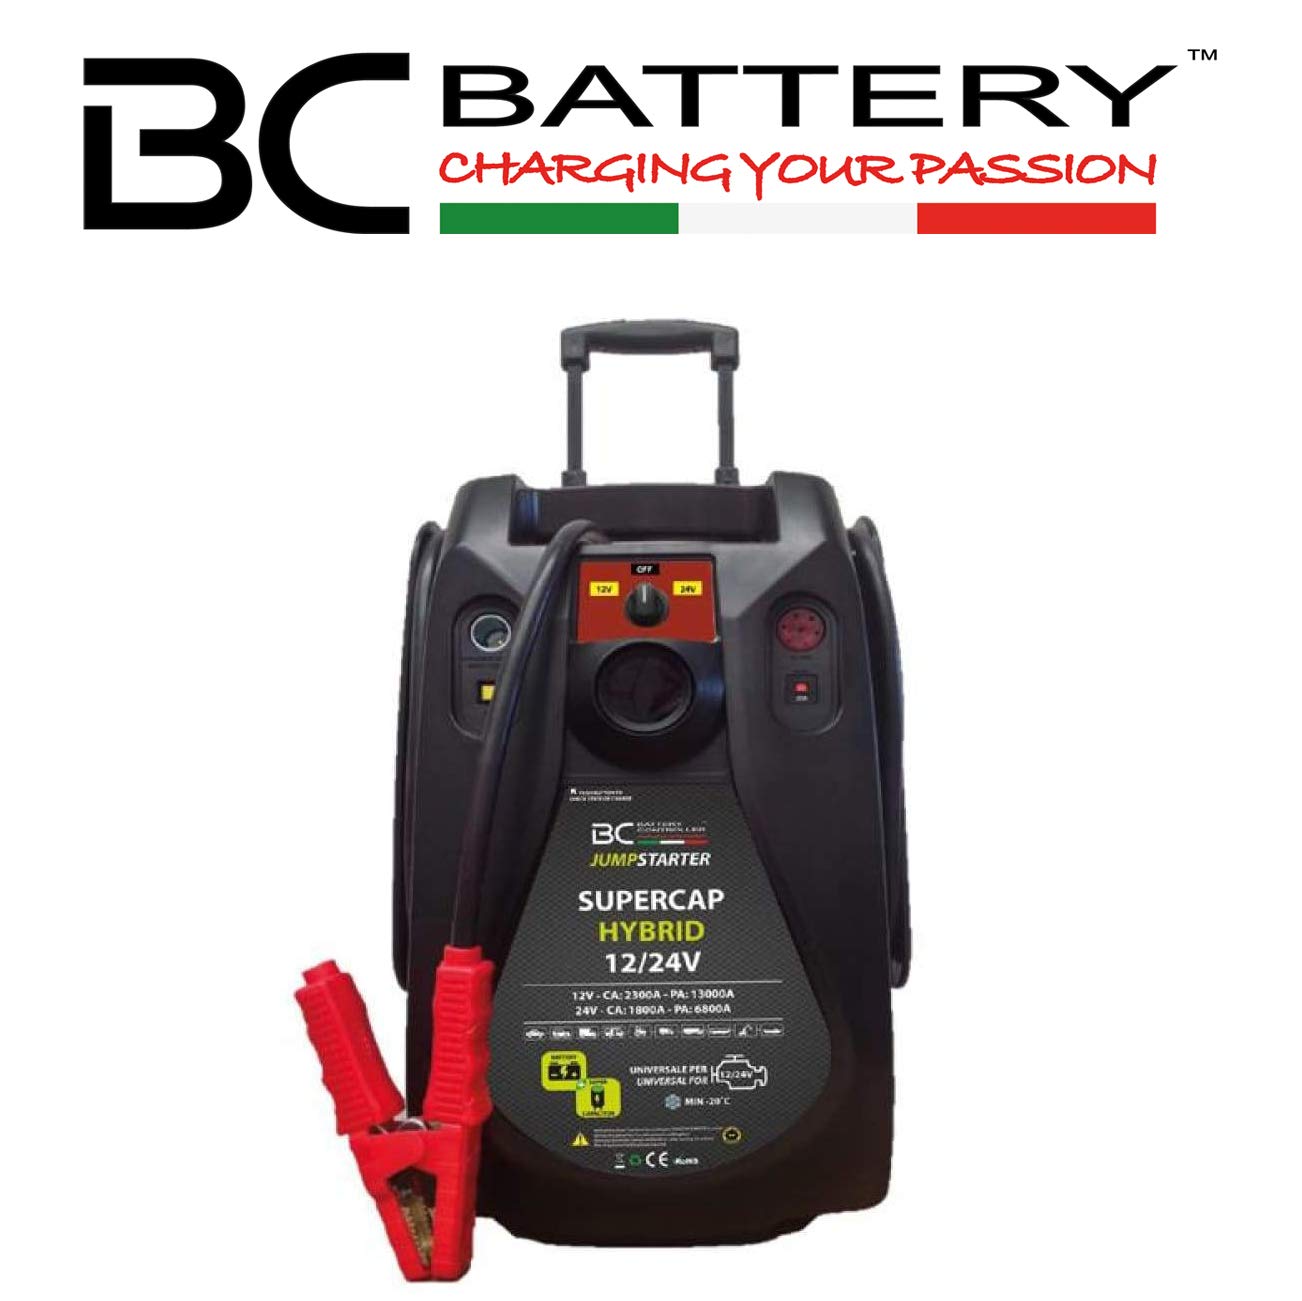 BC Battery Controller BC Jumpstarter Hybrid 12 / 24V 13000A | Professioneller Booster mit Superkondensatoren für Benzin, Diesel, Hybridautos/Vans/Traktoren